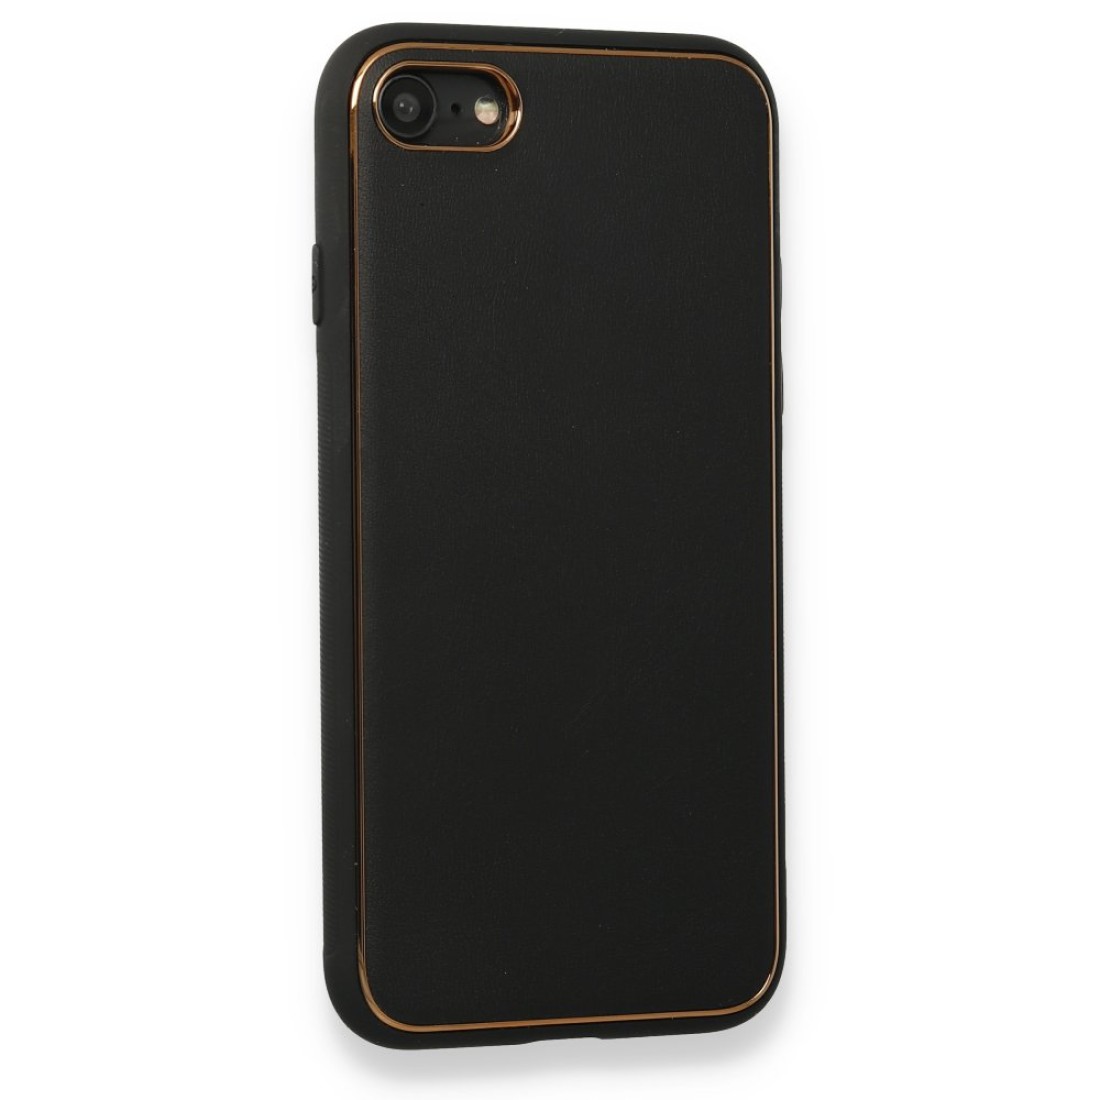 Apple iPhone 8 Kılıf Coco Deri Silikon Kapak - Siyah